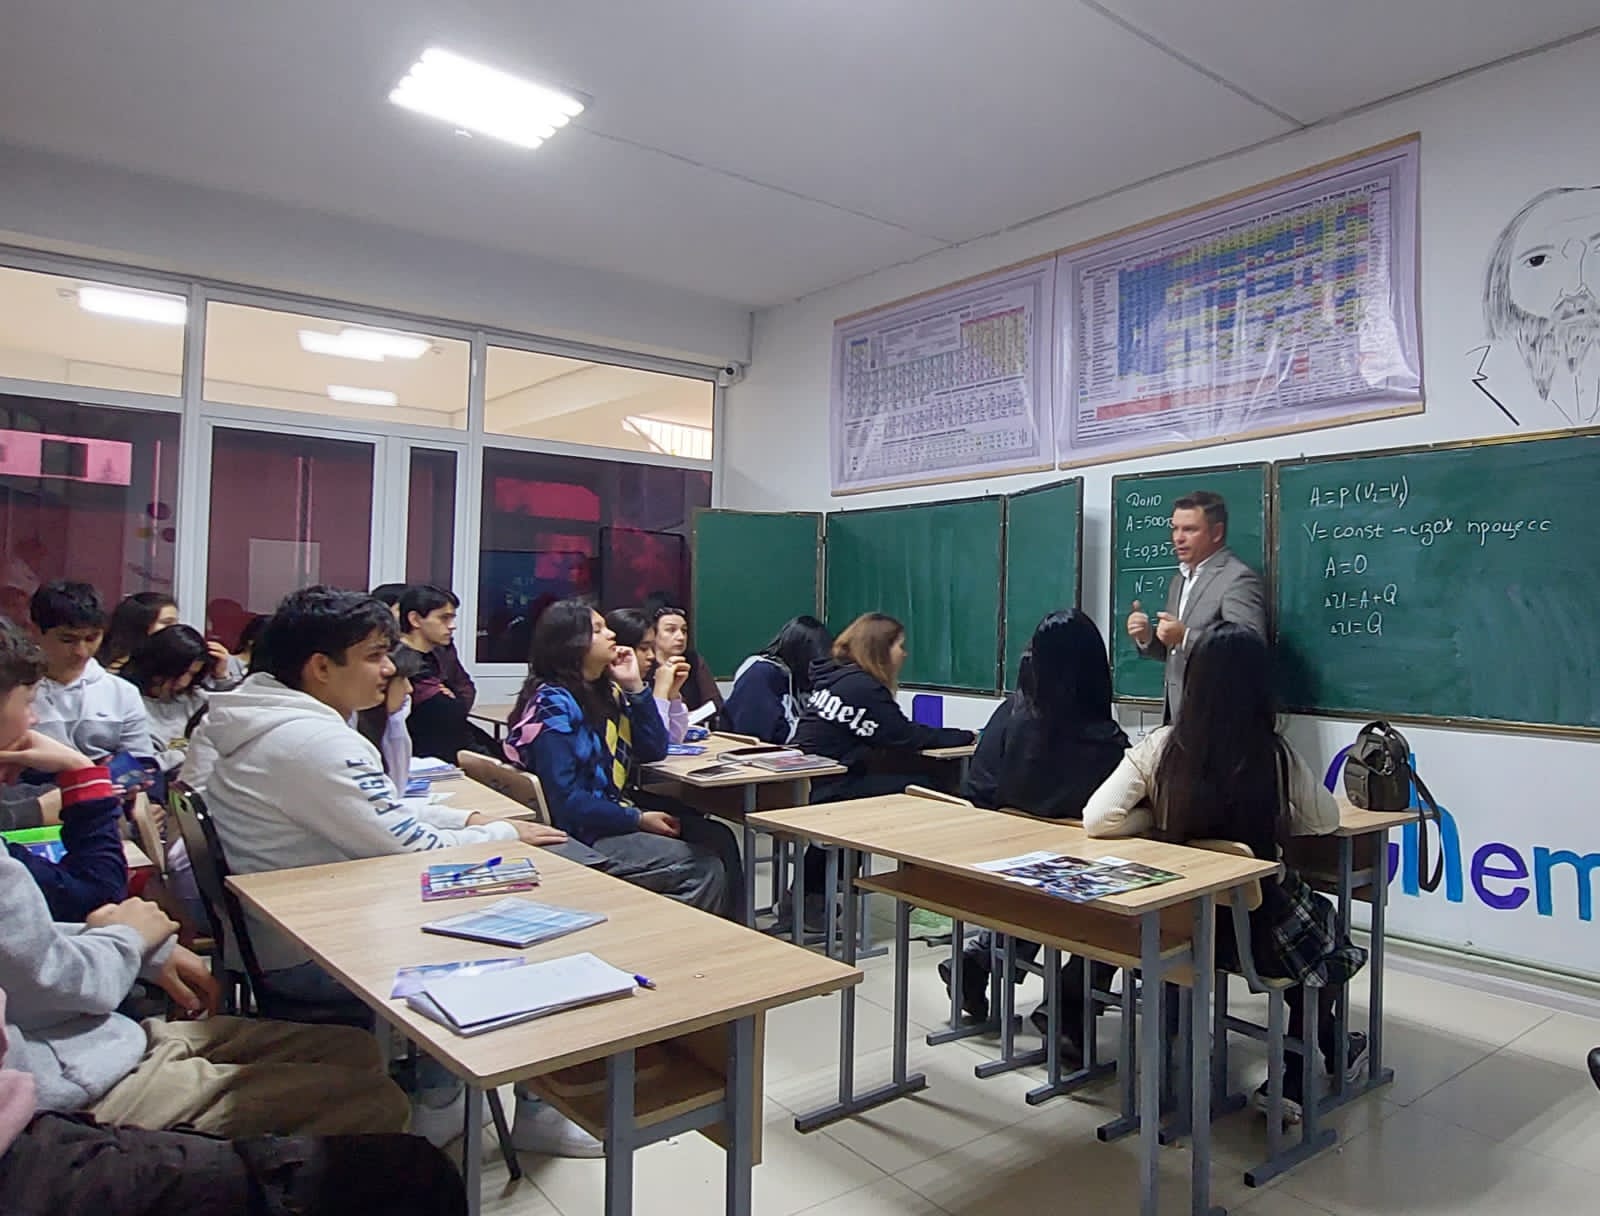 ТГУ развивает взаимовыгодное сотрудничество с таджикскими вузами и школами